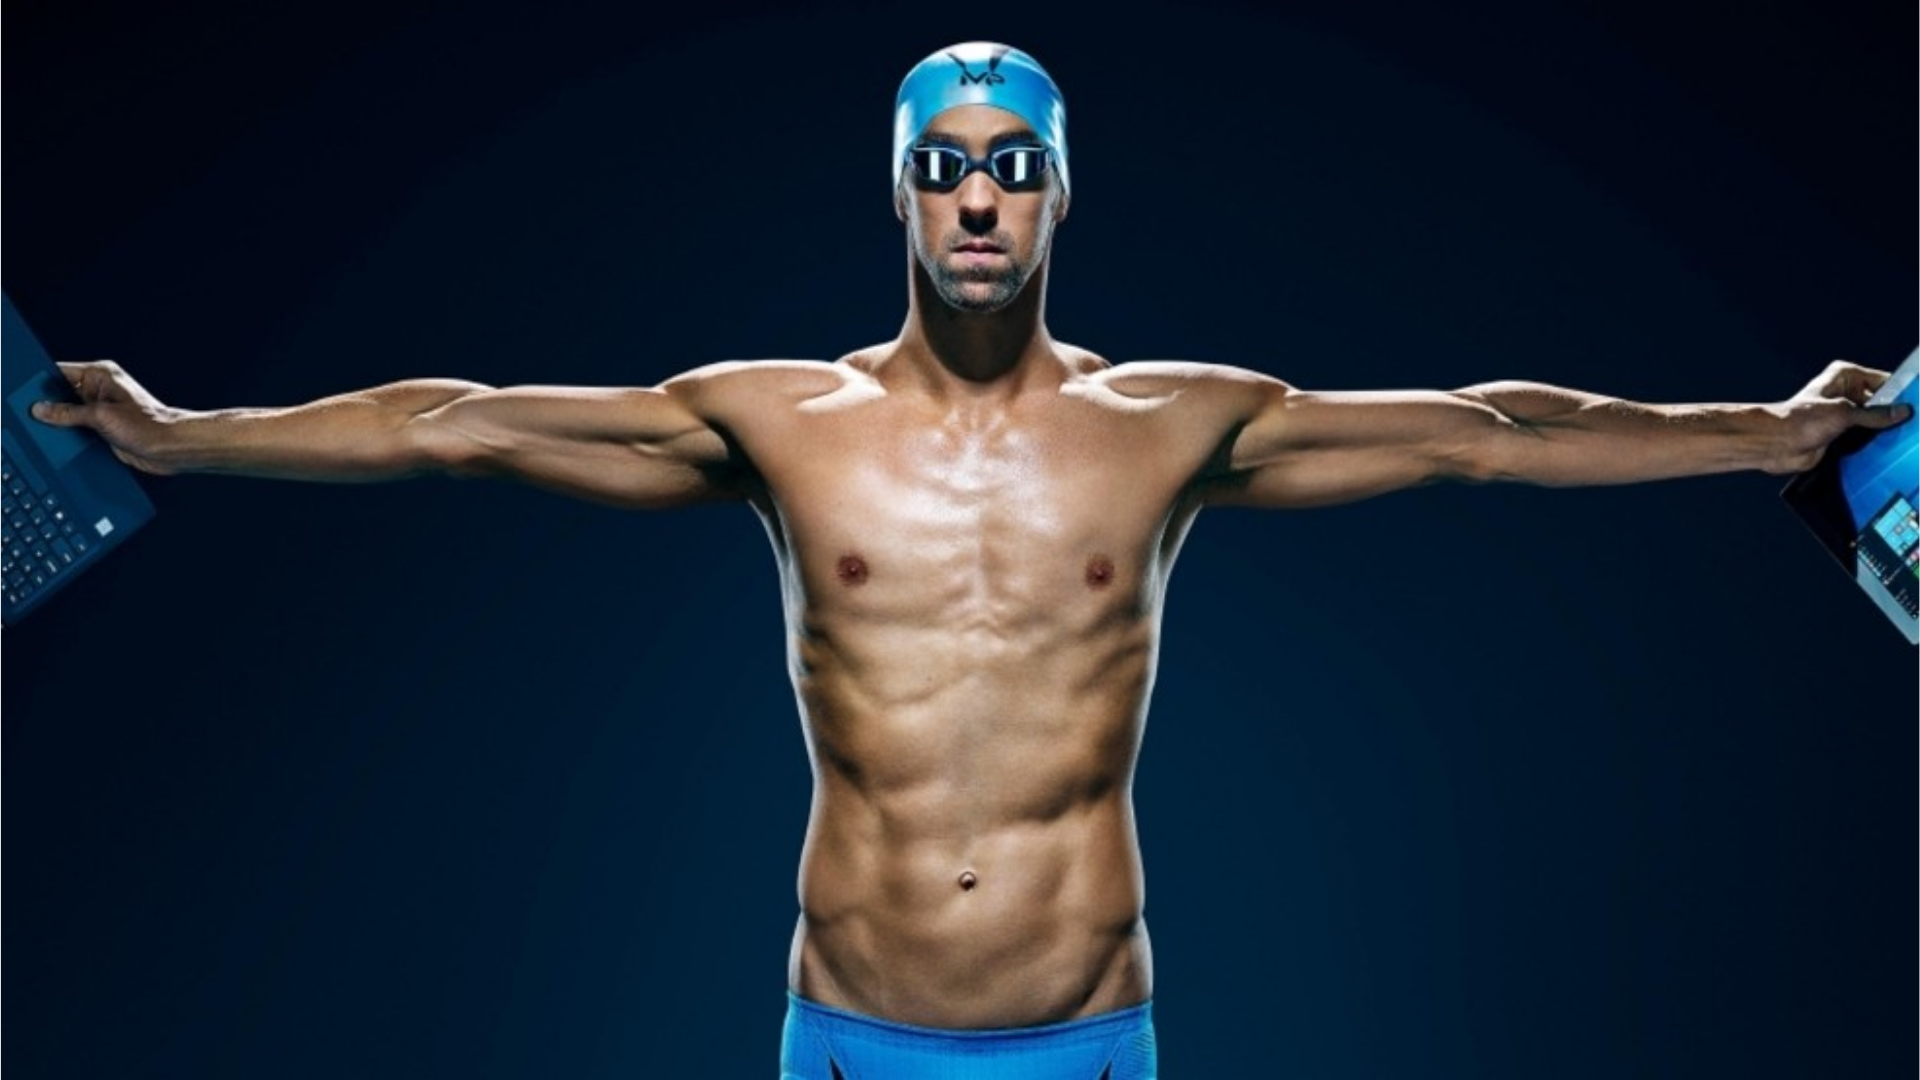 Kollarını açmış olan Phelps'in görseli.